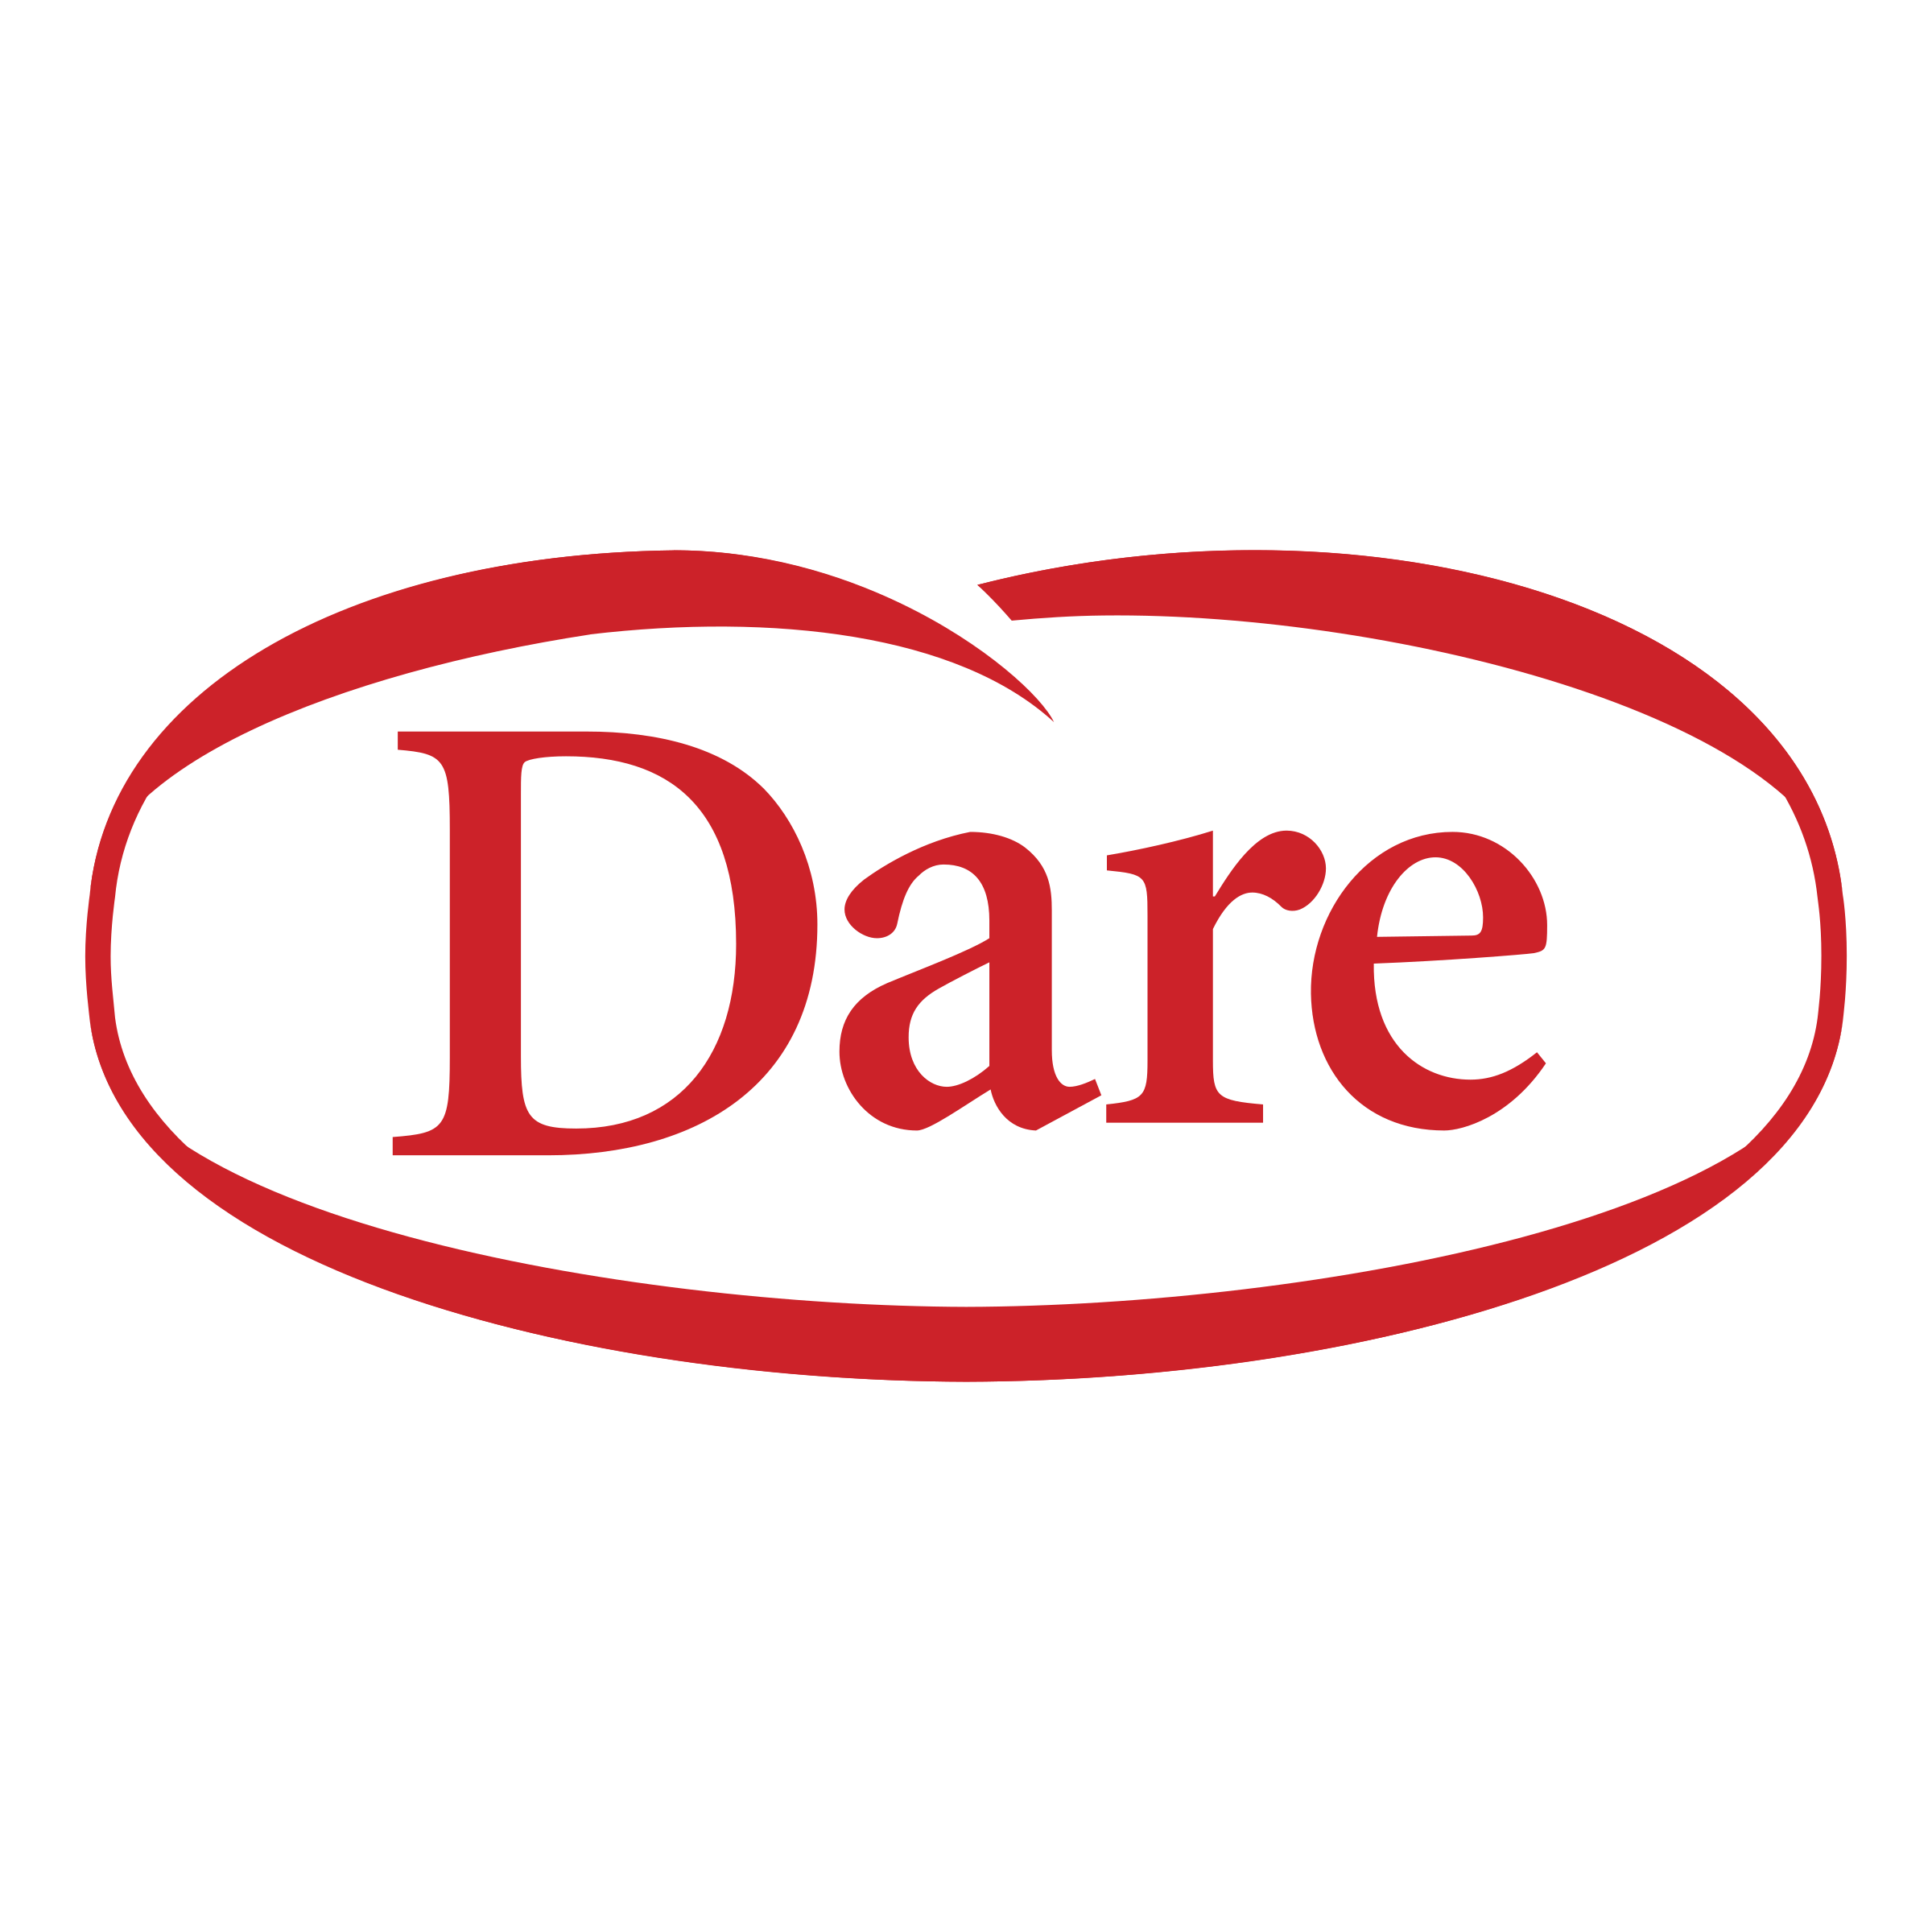 D.A.r.e Logo - Dare Logo PNG Transparent & SVG Vector - Freebie Supply